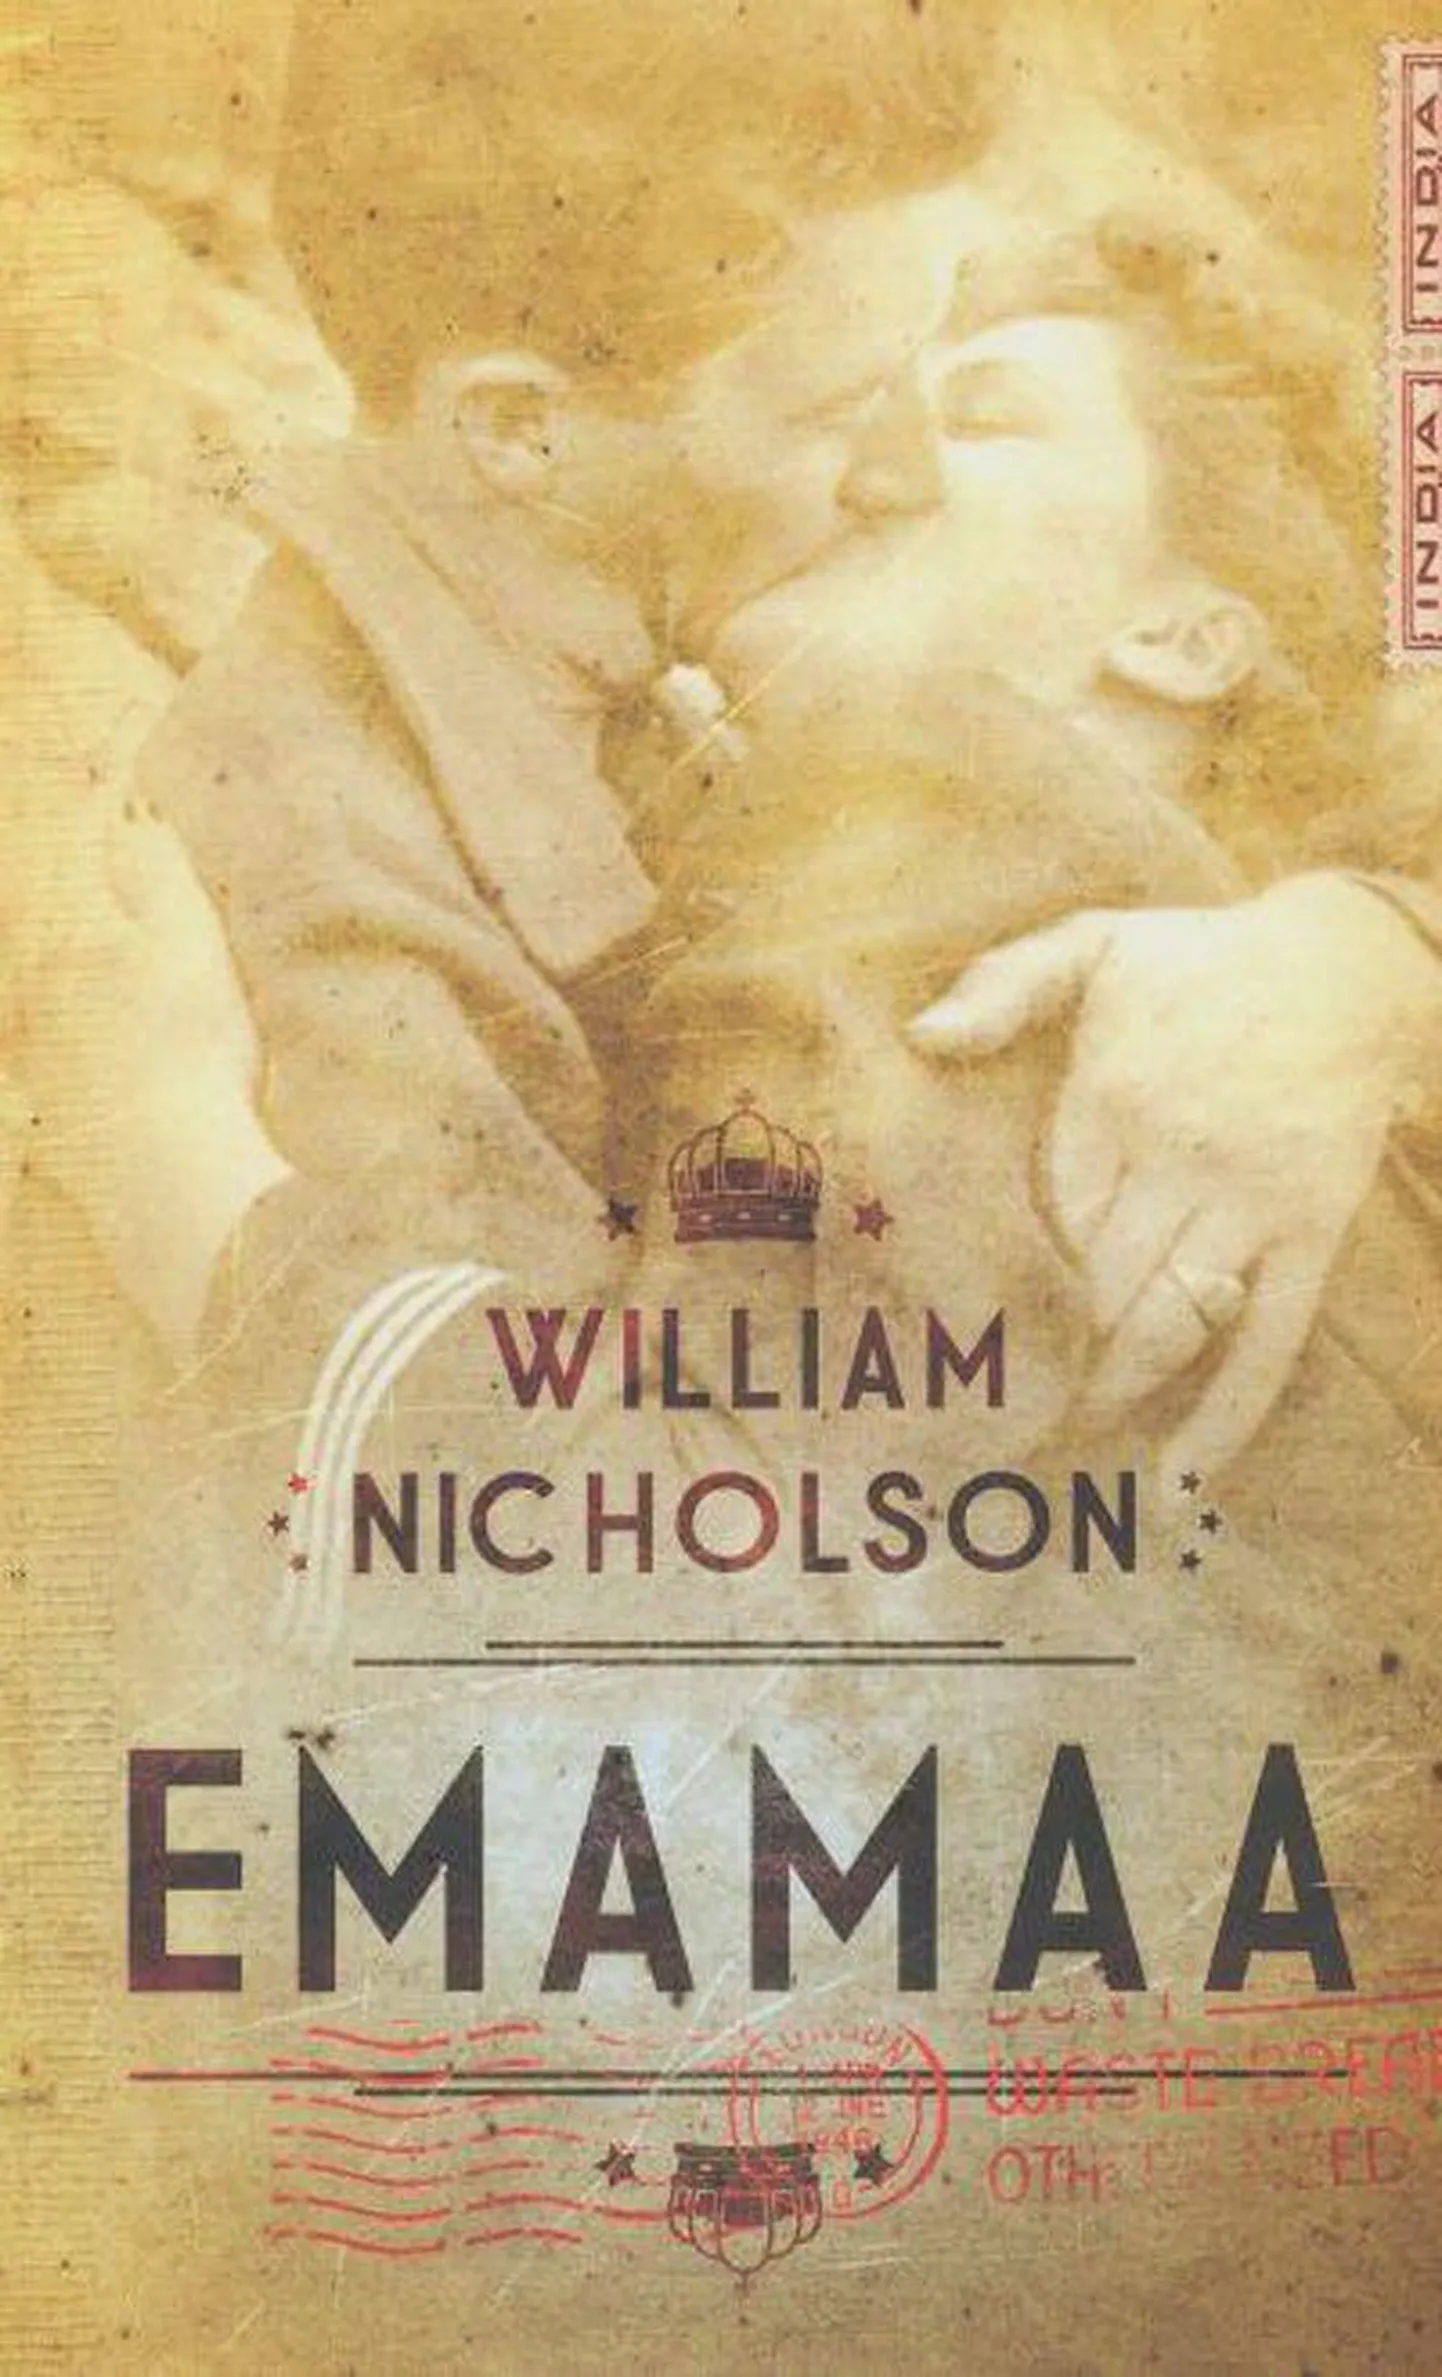 Raamat
William Nicholson
«Ema­maa»
Inglise keelest tõlkinud ­Tiina Viil
Varrak
472 lk